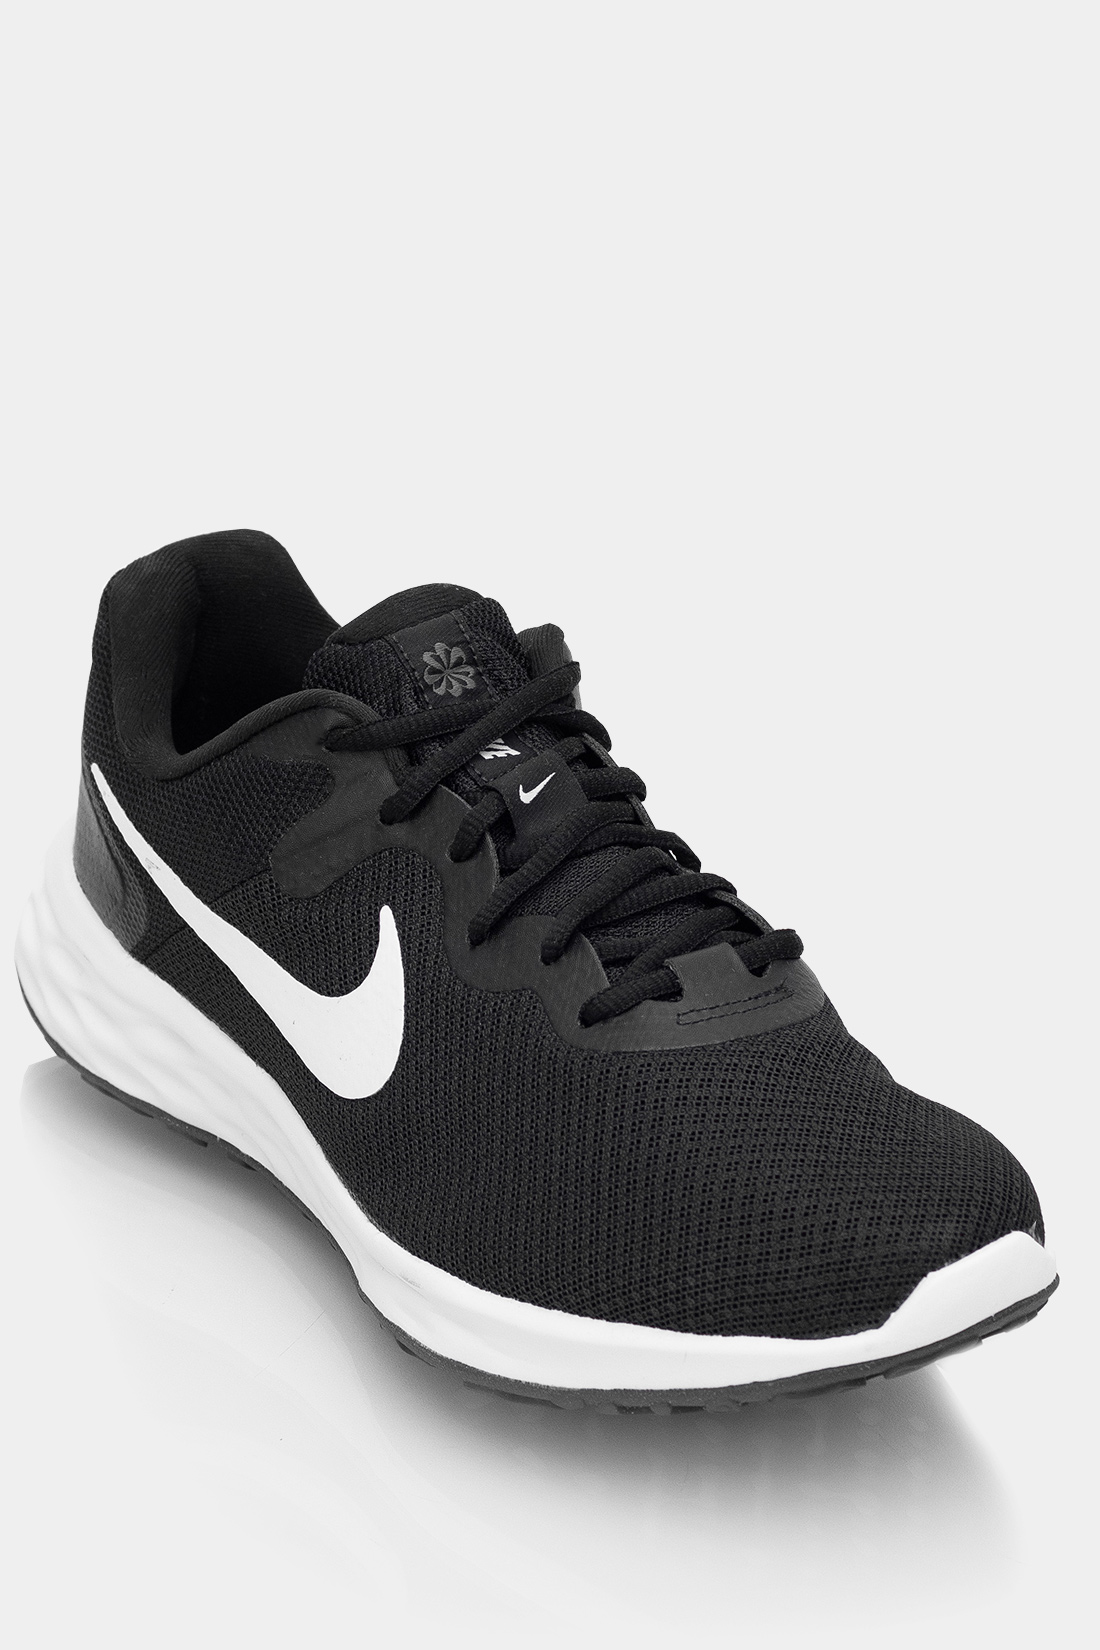 Tenis Running Nike Revolution 6 Nn